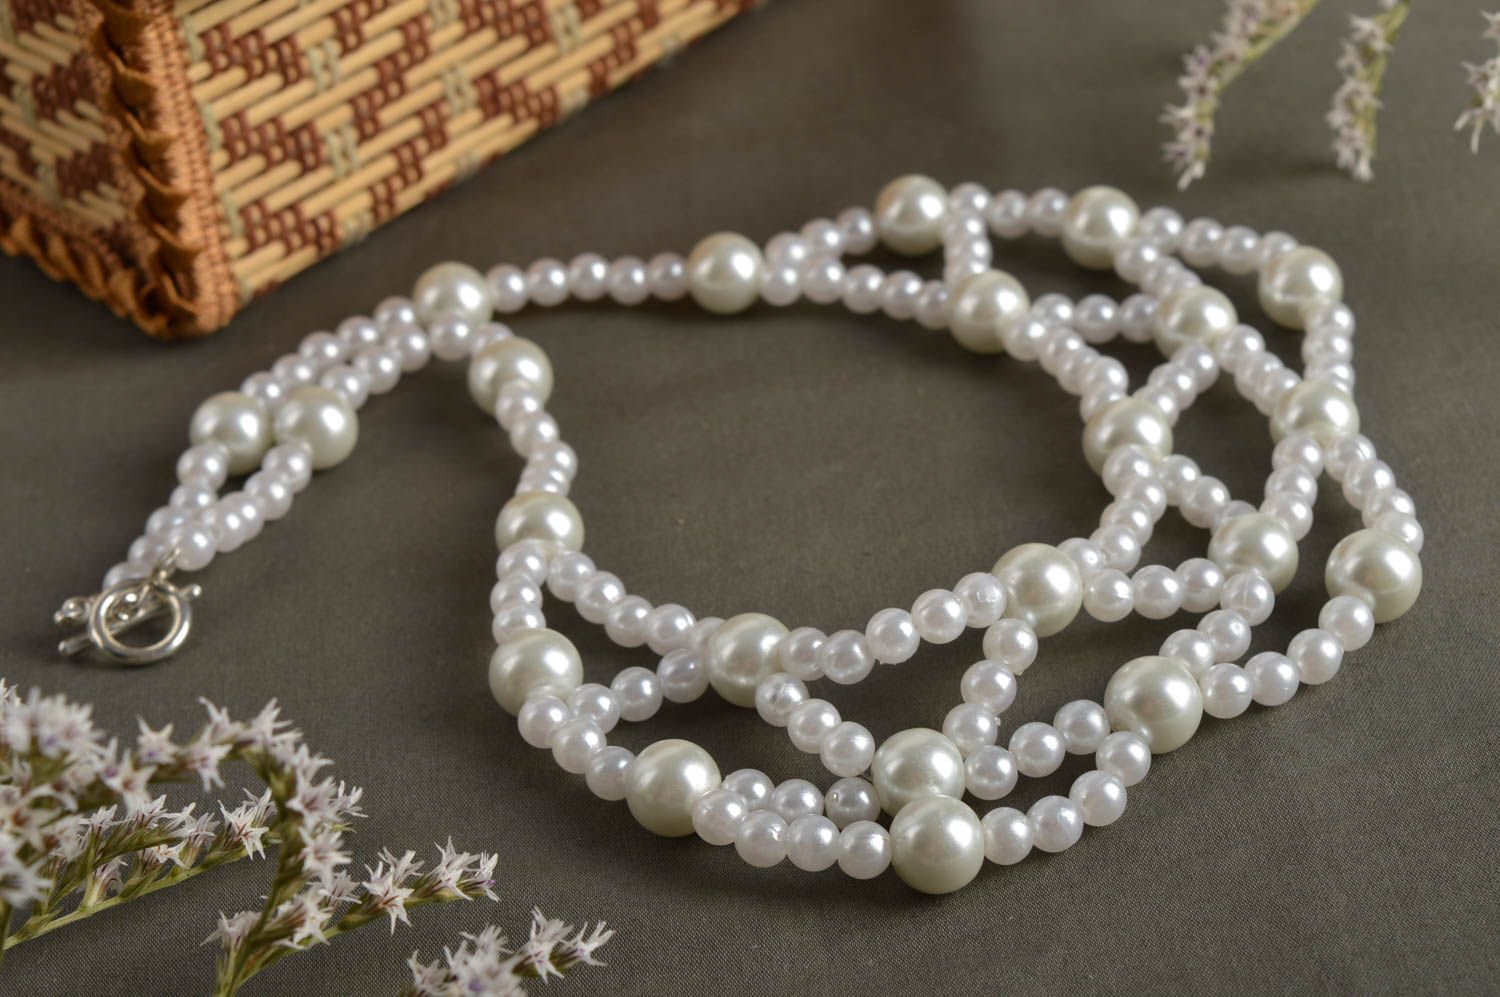 Handmade white beaded necklace elegant evening necklace female jewelry photo 1